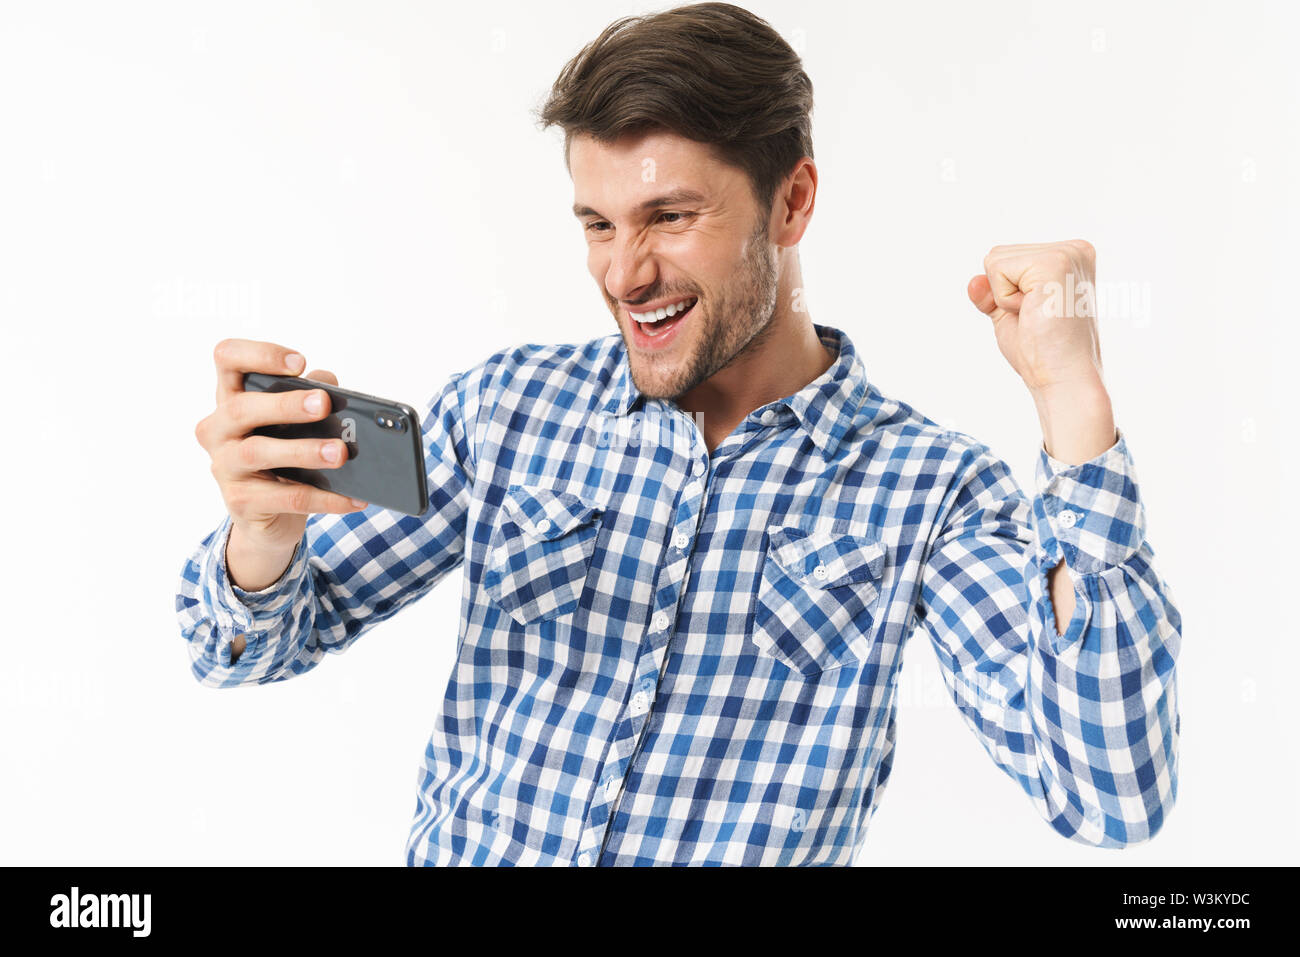 Photo de grand homme en chemise décontractée jouer jeu vidéo sur cellulaire et un poing serrant isolé sur fond blanc Banque D'Images